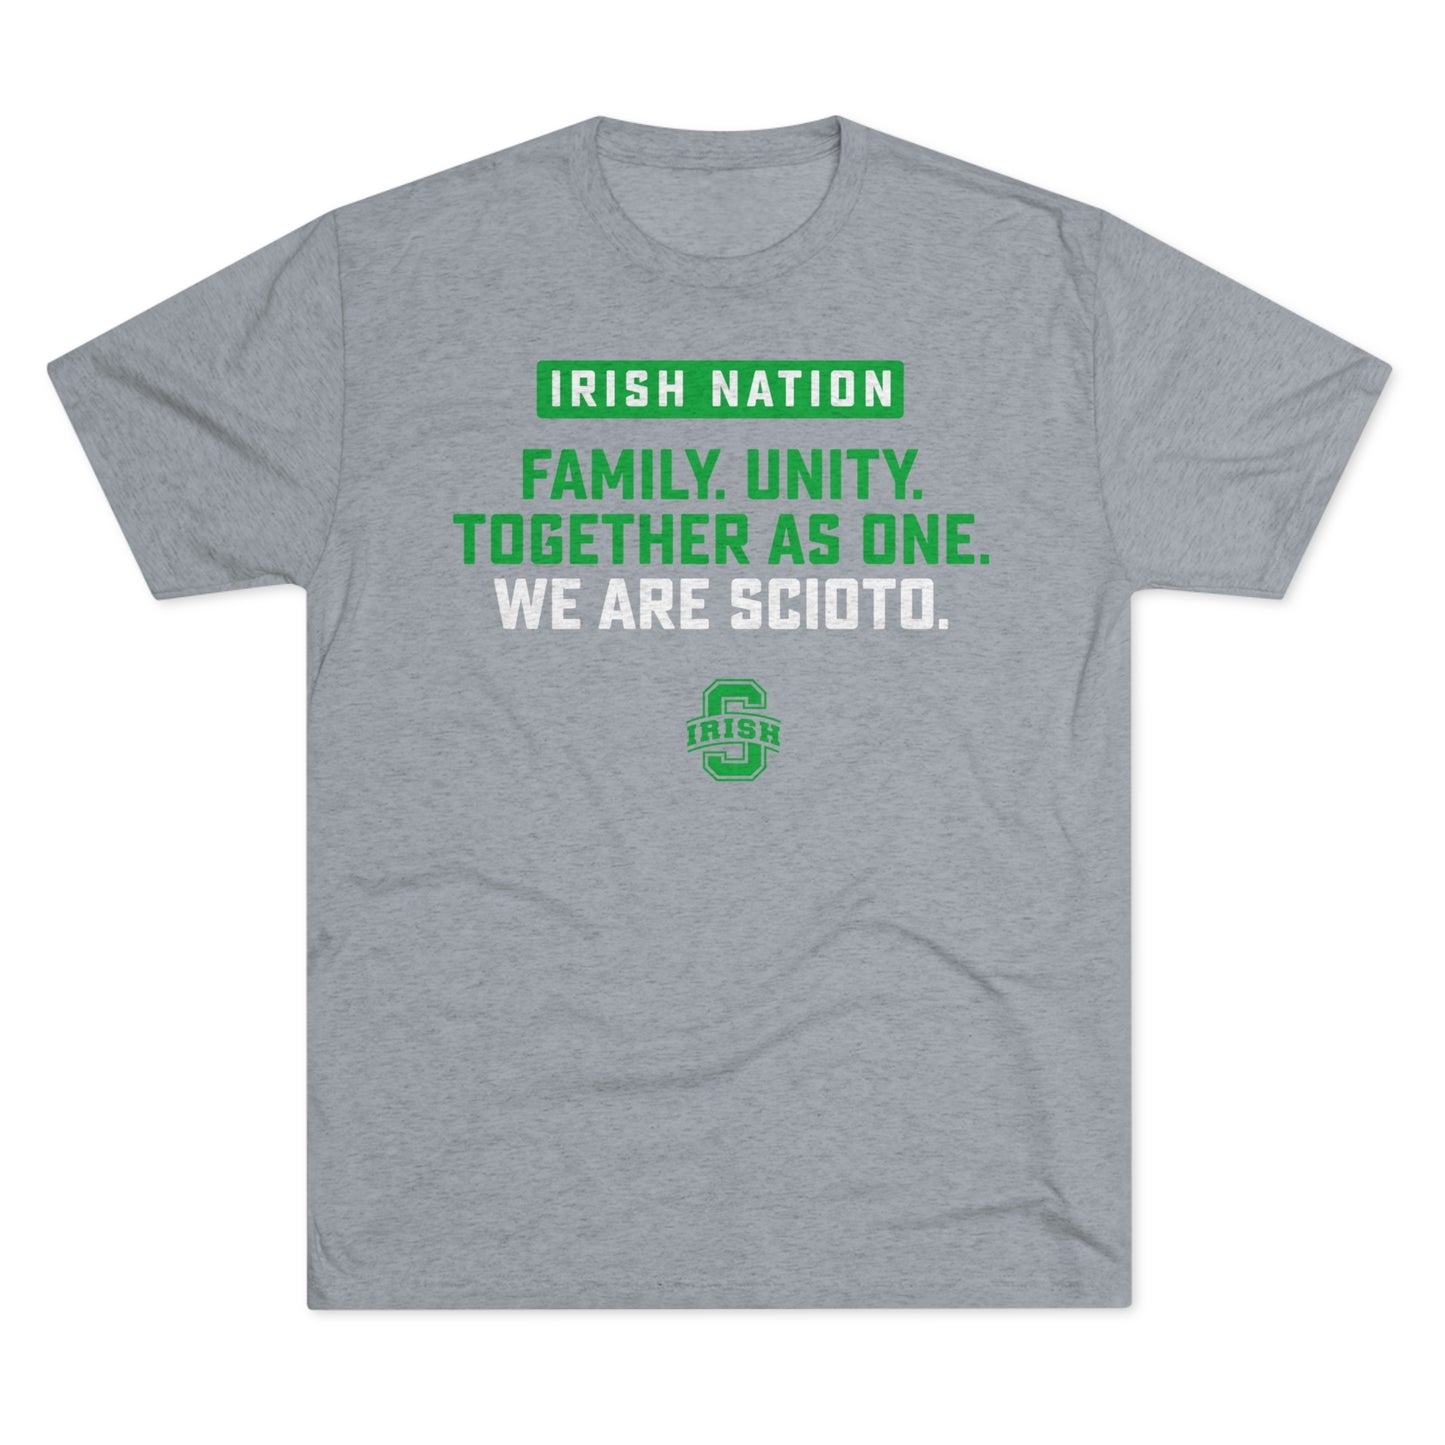 IRISH NATION-FAMILY UNITY. SCIOTO LOGO - Unisex Tri-Blend Crew Tee